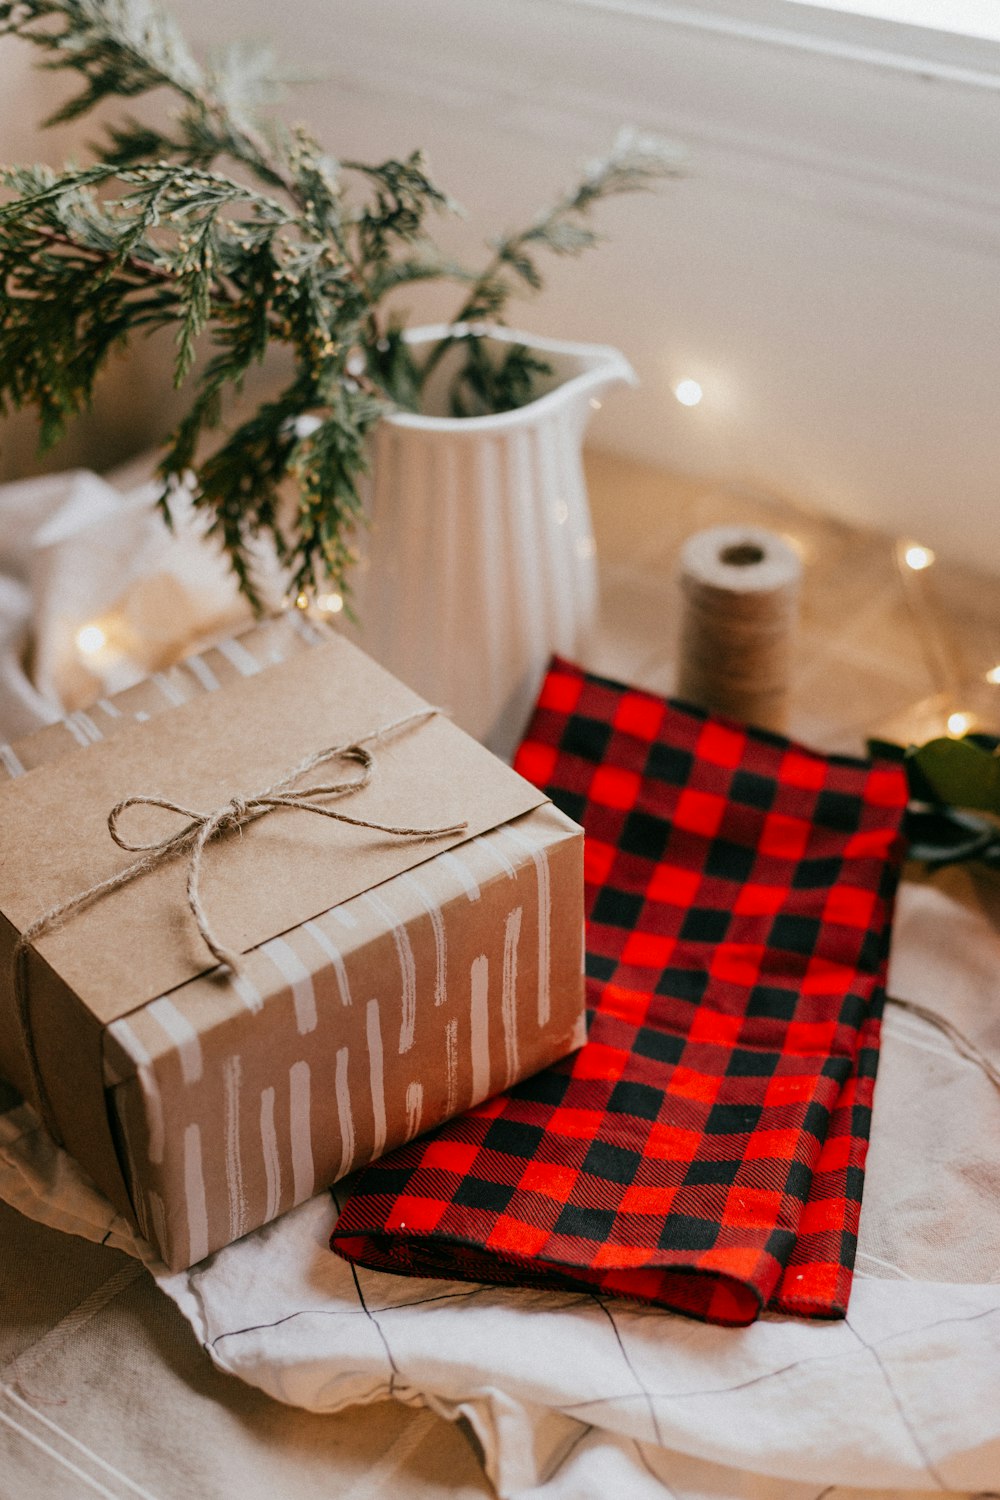 Caja de regalo marrón y blanco sobre tela de cuadros rojos y blancos